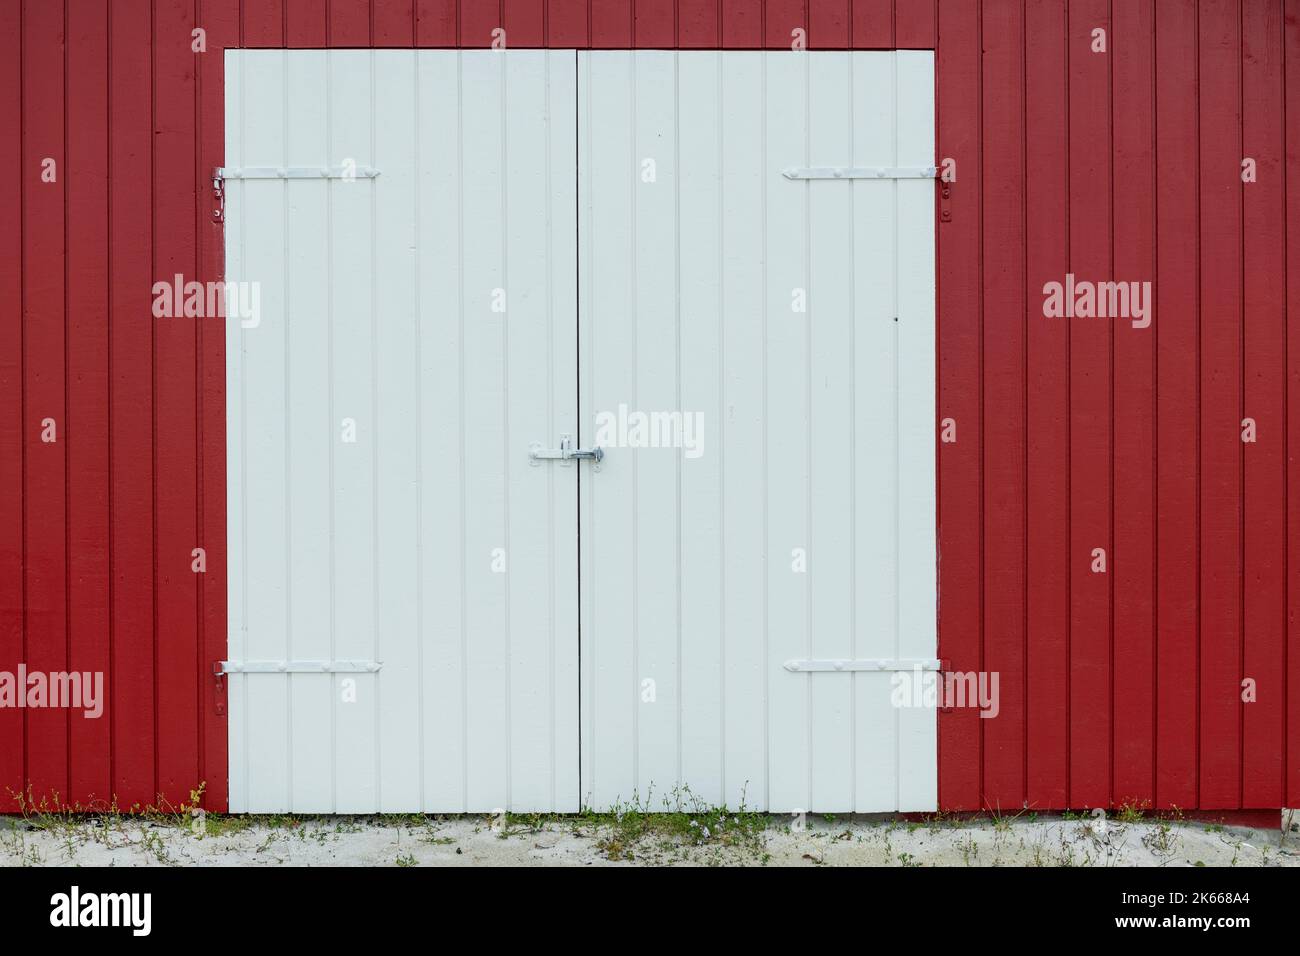 Porte rouge et mur extérieur en panneaux de fermeture – photo de stock Banque D'Images